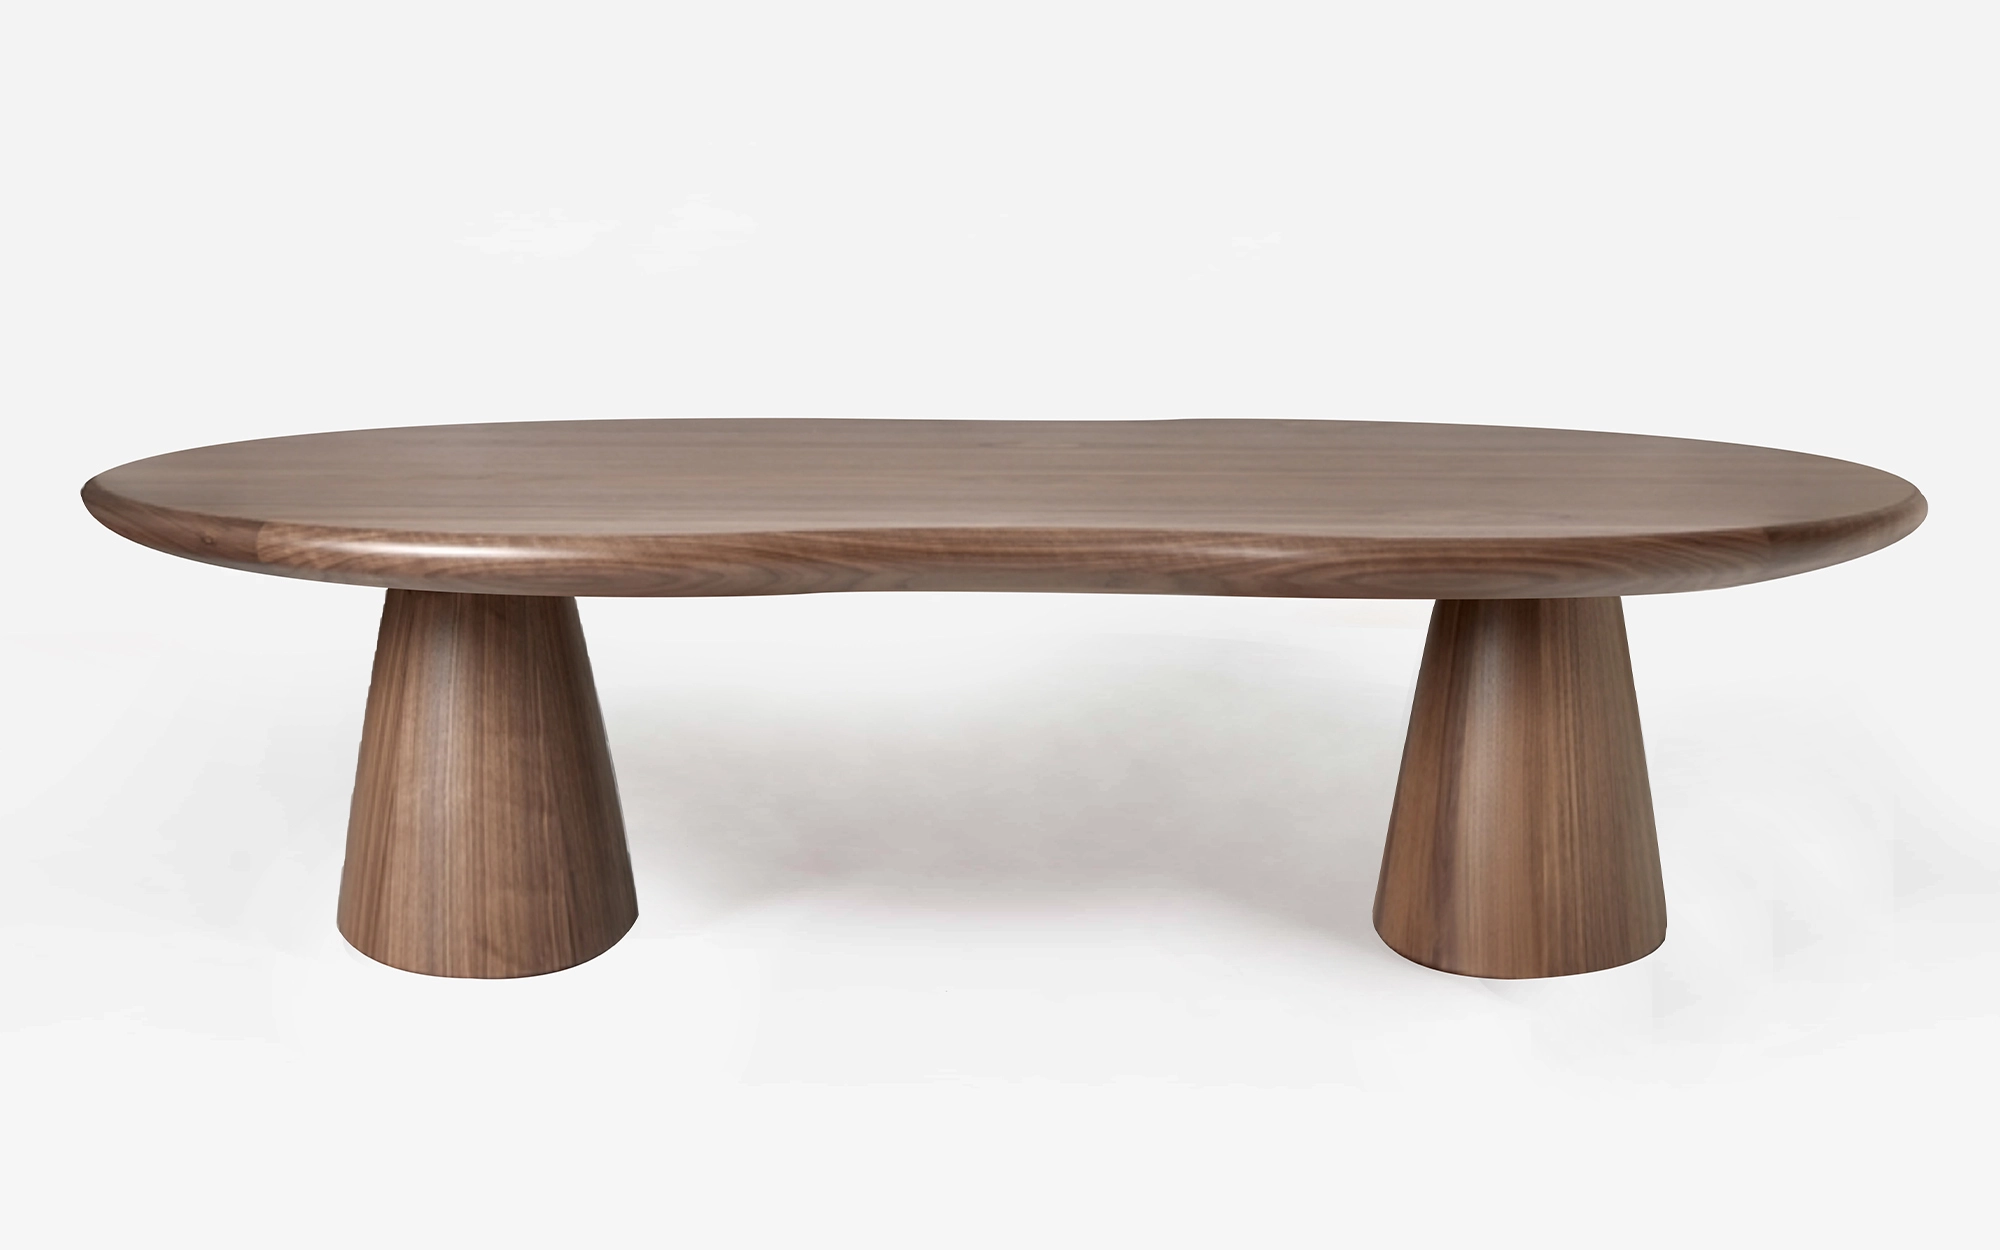 Firenze Table - Alessandro Mendini - Stool - Galerie kreo